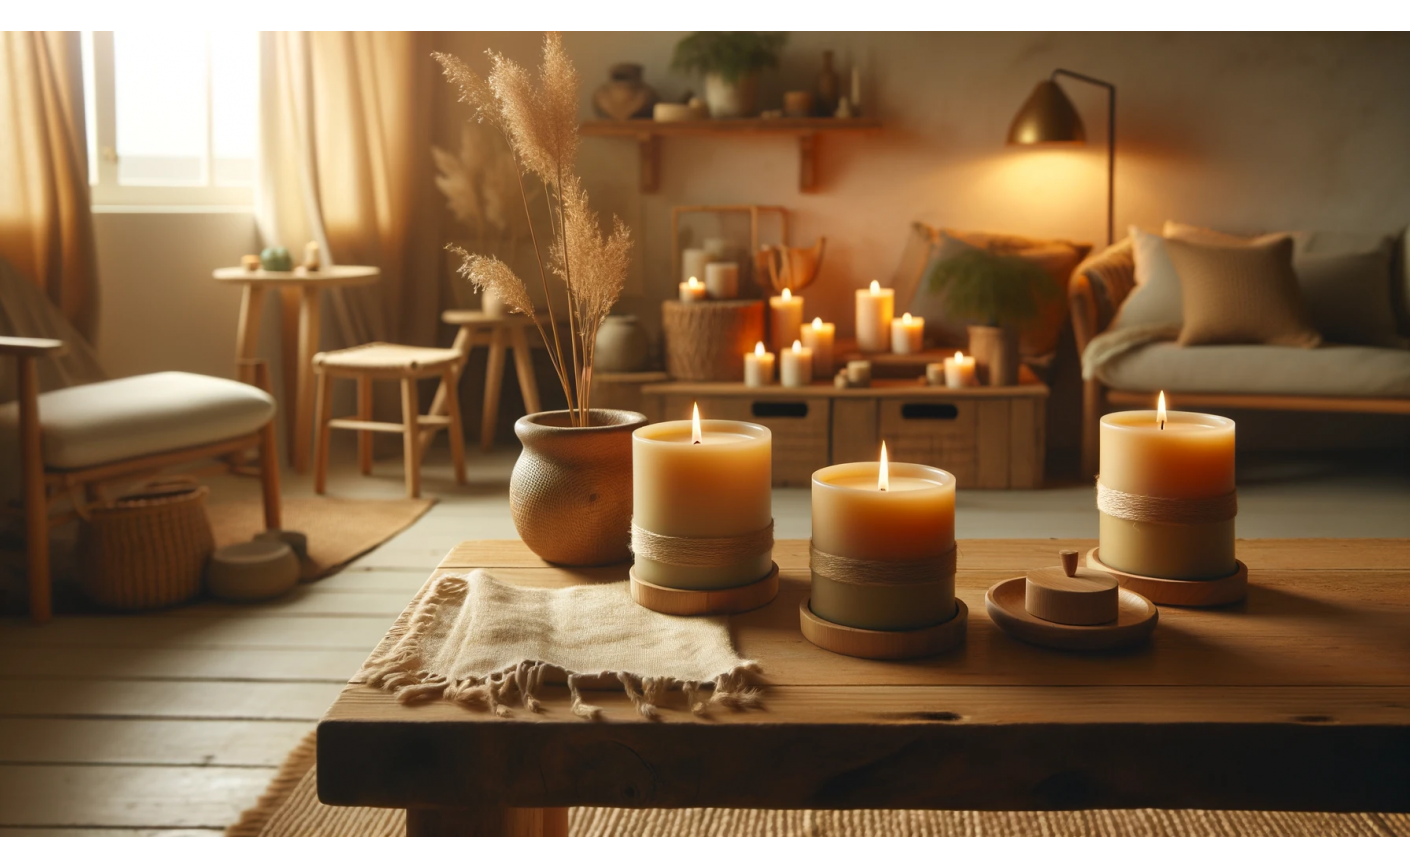 Les bougies naturelles : L'écoresponsabilité dans nos foyers